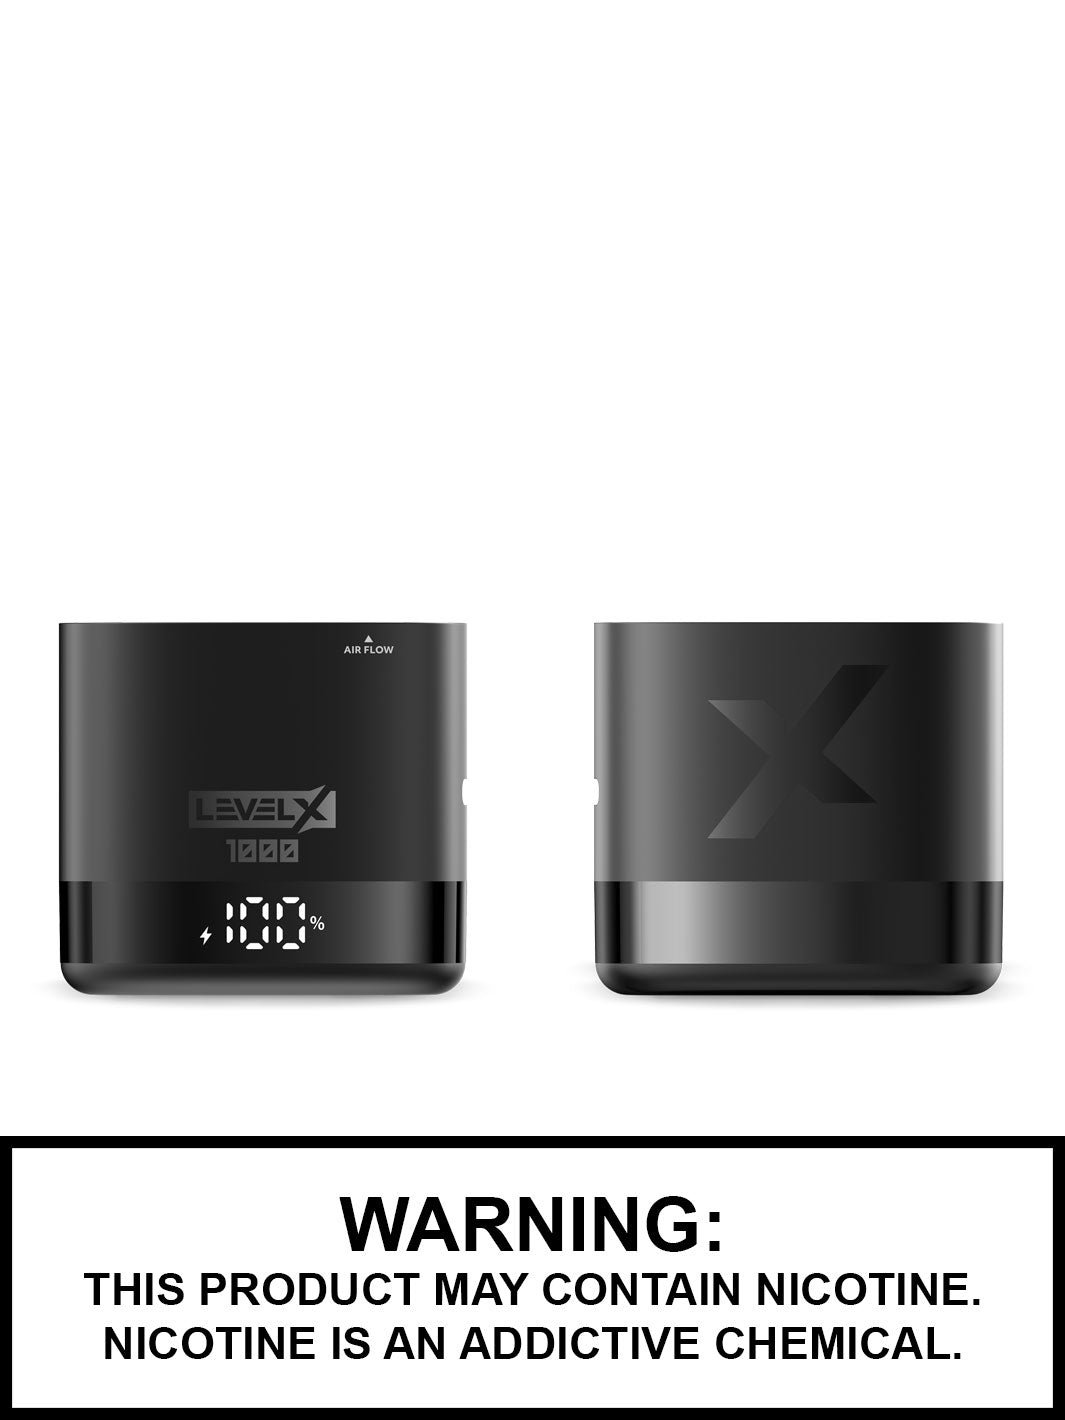 Metallic Black Level X Pod Vape 1000mAh Vape Device, Vape360 Canada